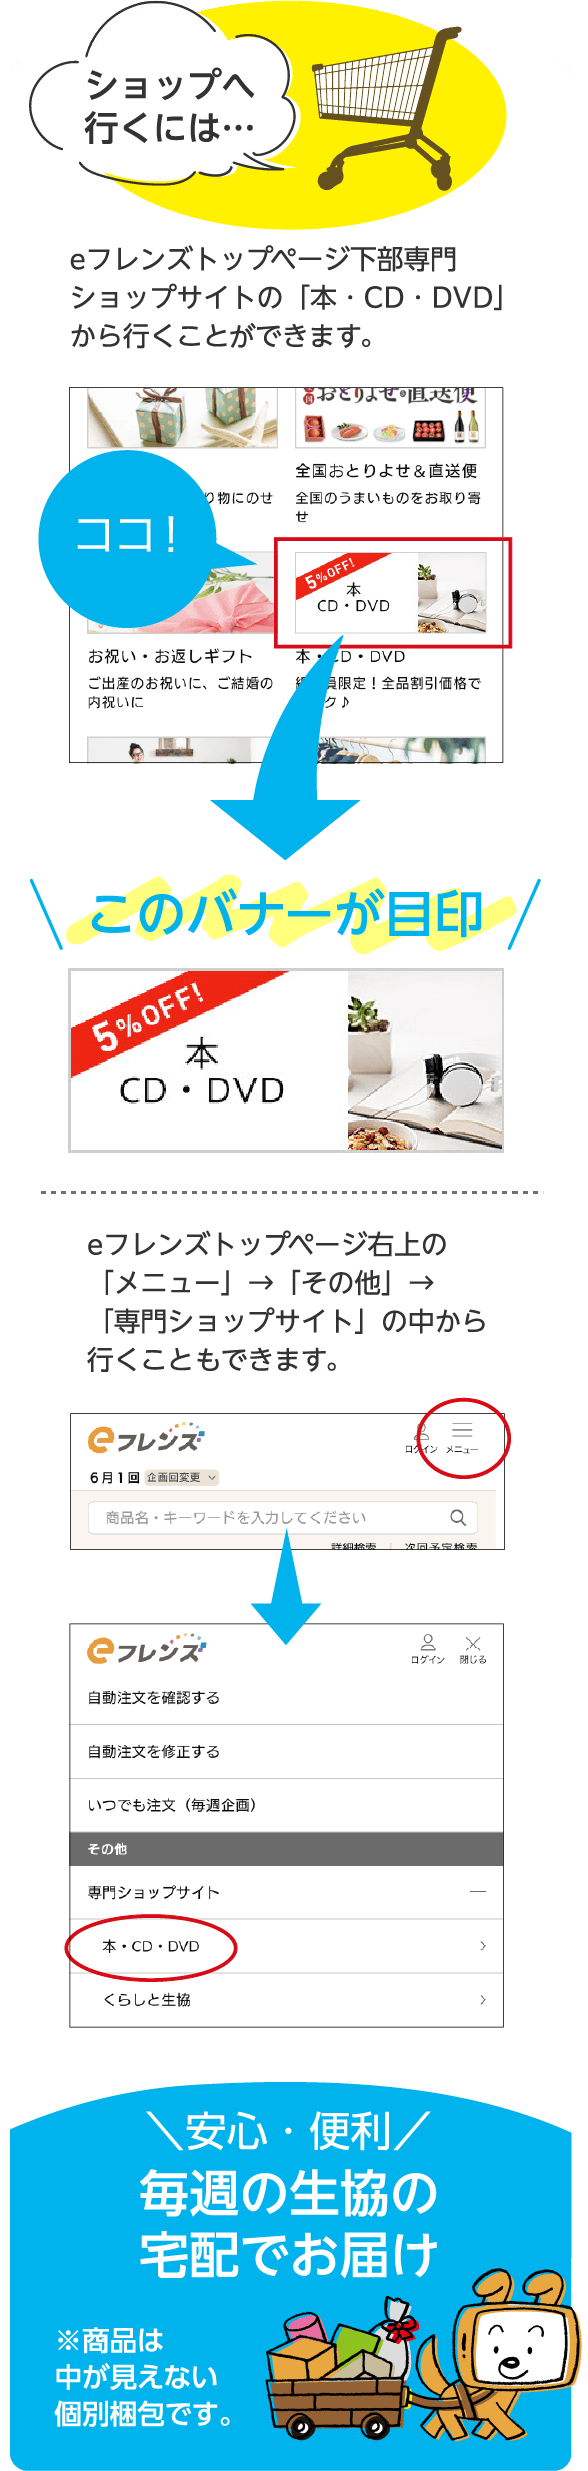 ショップへ行くには… eフレンズトップページ下部専門ショップサイトの「本・CD・DVD」から行くことができます。eフレンズトップページ右上の「専門ショップサイト」の中から行くこともできます。安心・便利毎週の生協の宅配でお届け※商品は中が見えない個別梱包です。